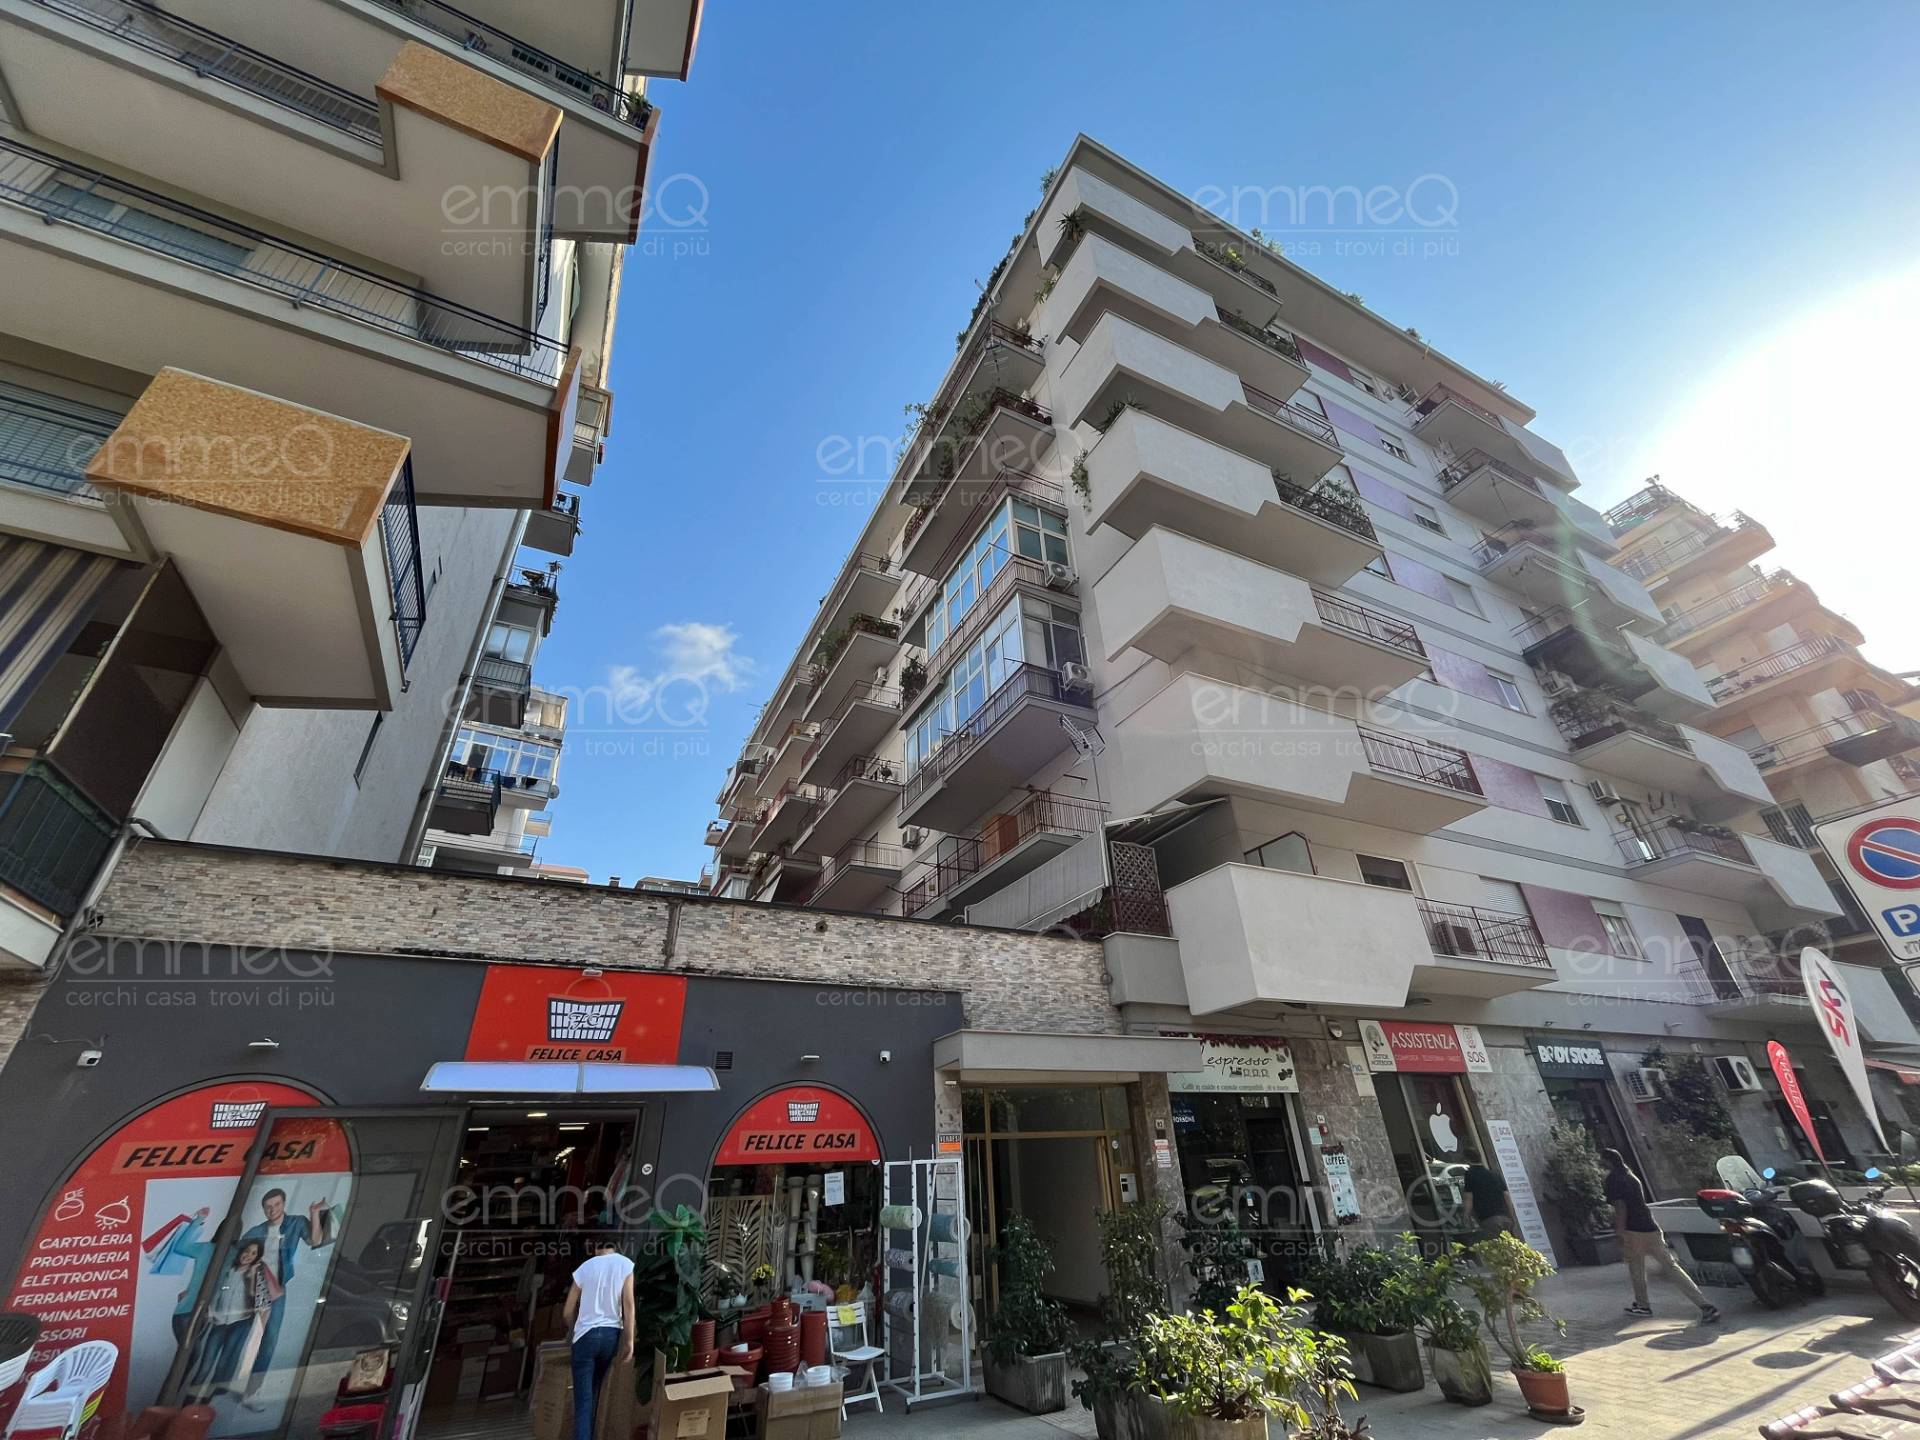 Appartamento da ristrutturare, Palermo galilei